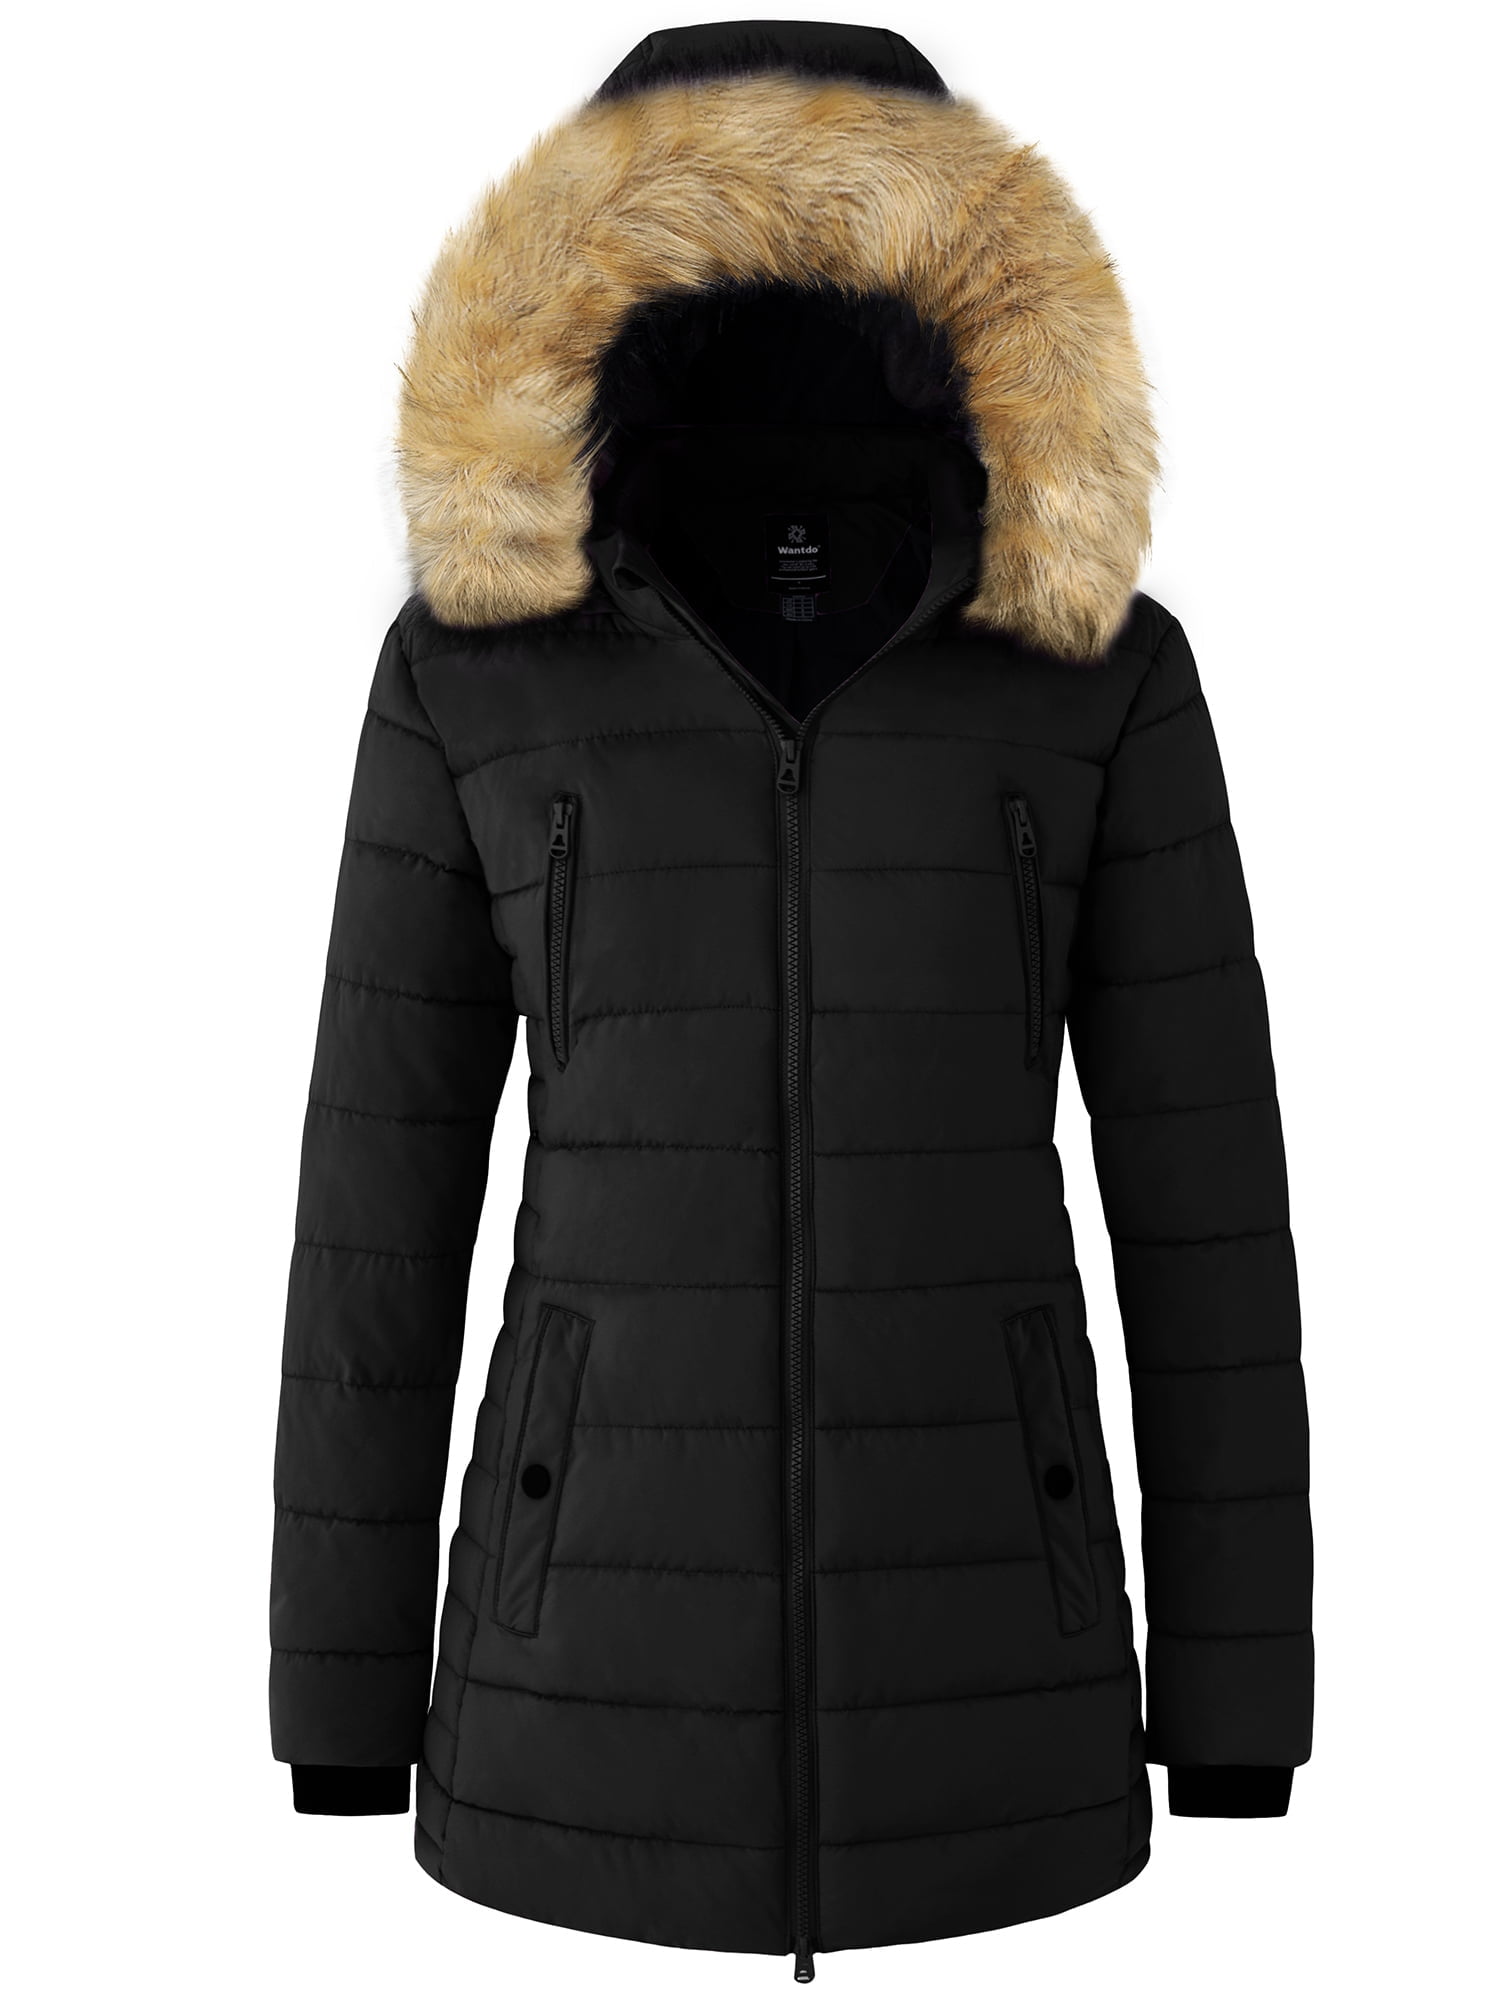 Wantdo Women's Puffer Jacket Water Resistant Winter Coat Hooded Puffer  Coats Black L